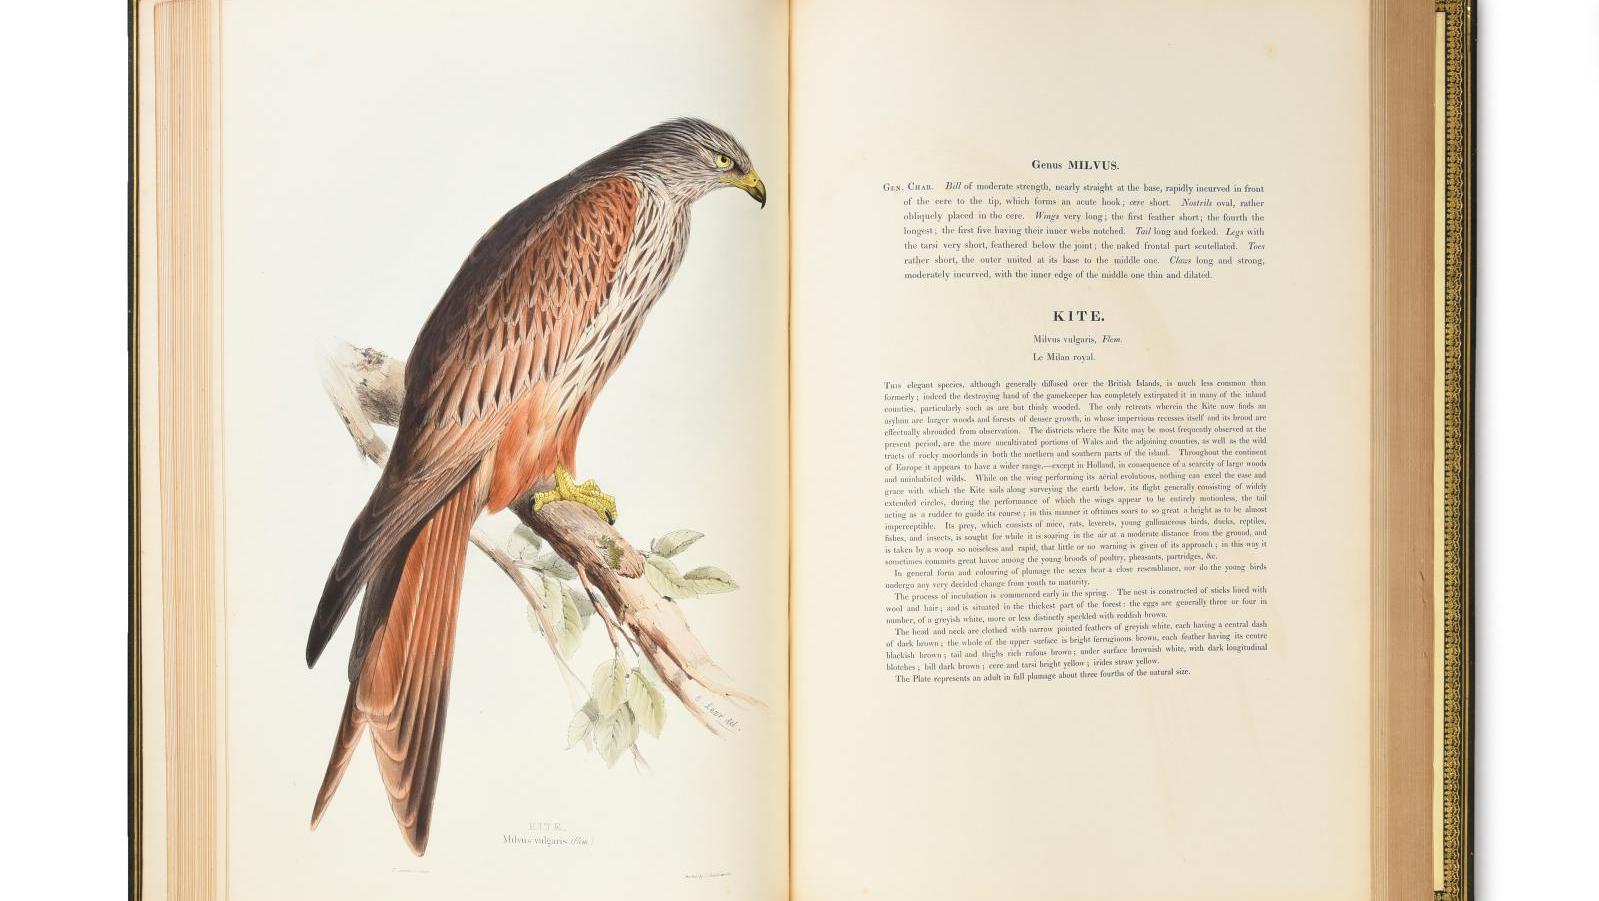 John Gould (1804-1881), The Birds of Europe (Londres, 1837), ensemble de cinq volumes... Une bibliothèque à livre(s) ouvert(s)